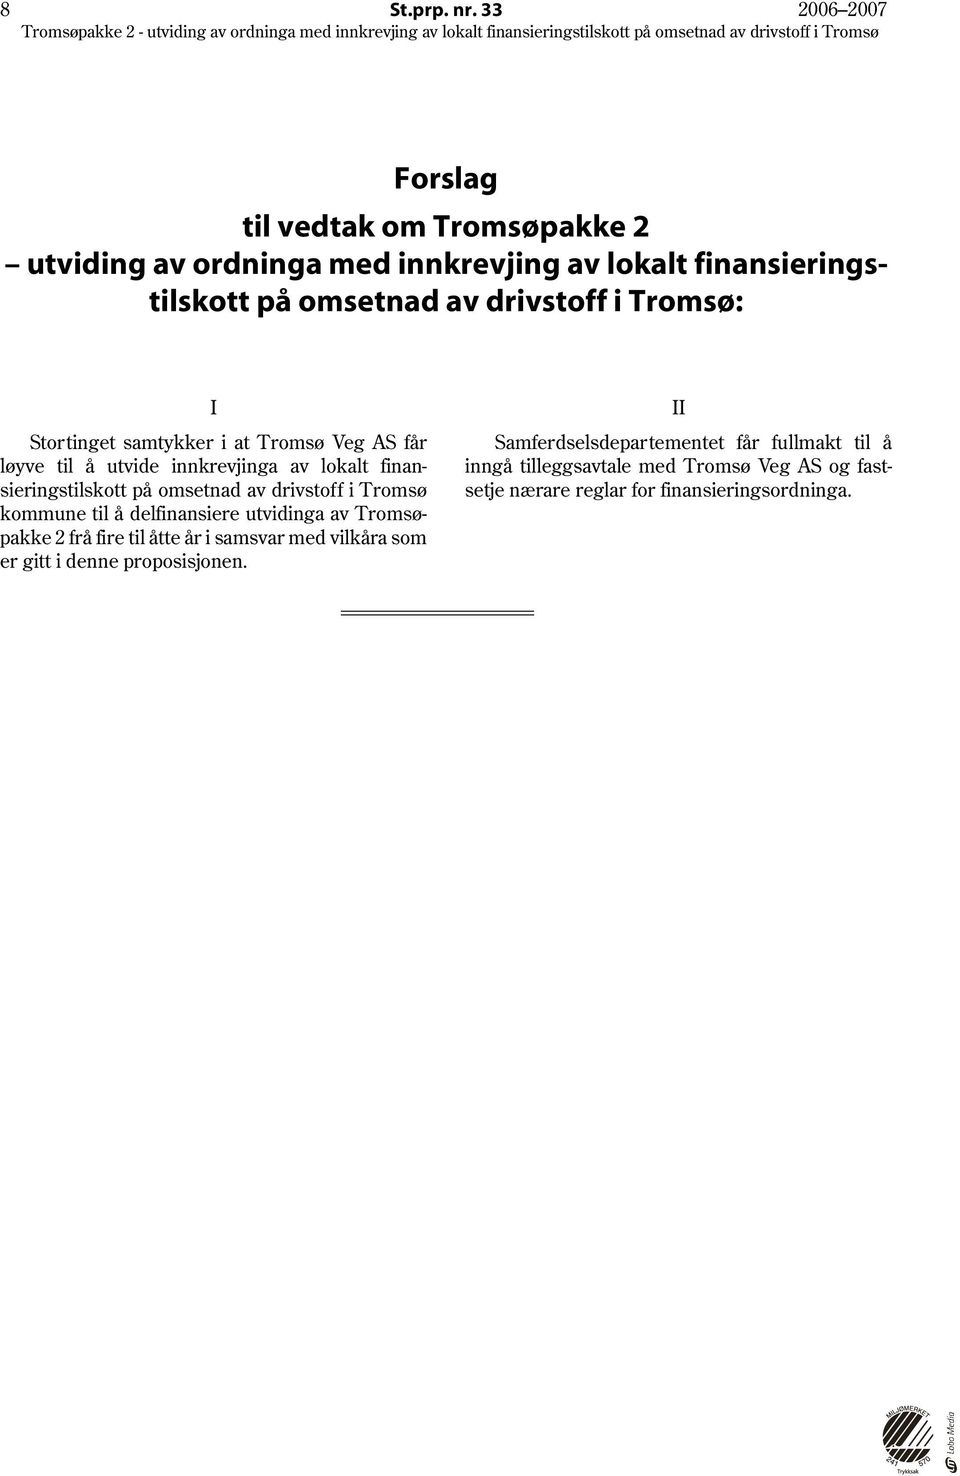 Tromsø: I II Samferdselsdepartementet får fullmakt til å inngå tilleggsavtale med Tromsø Veg AS og fast setje nærare reglar for